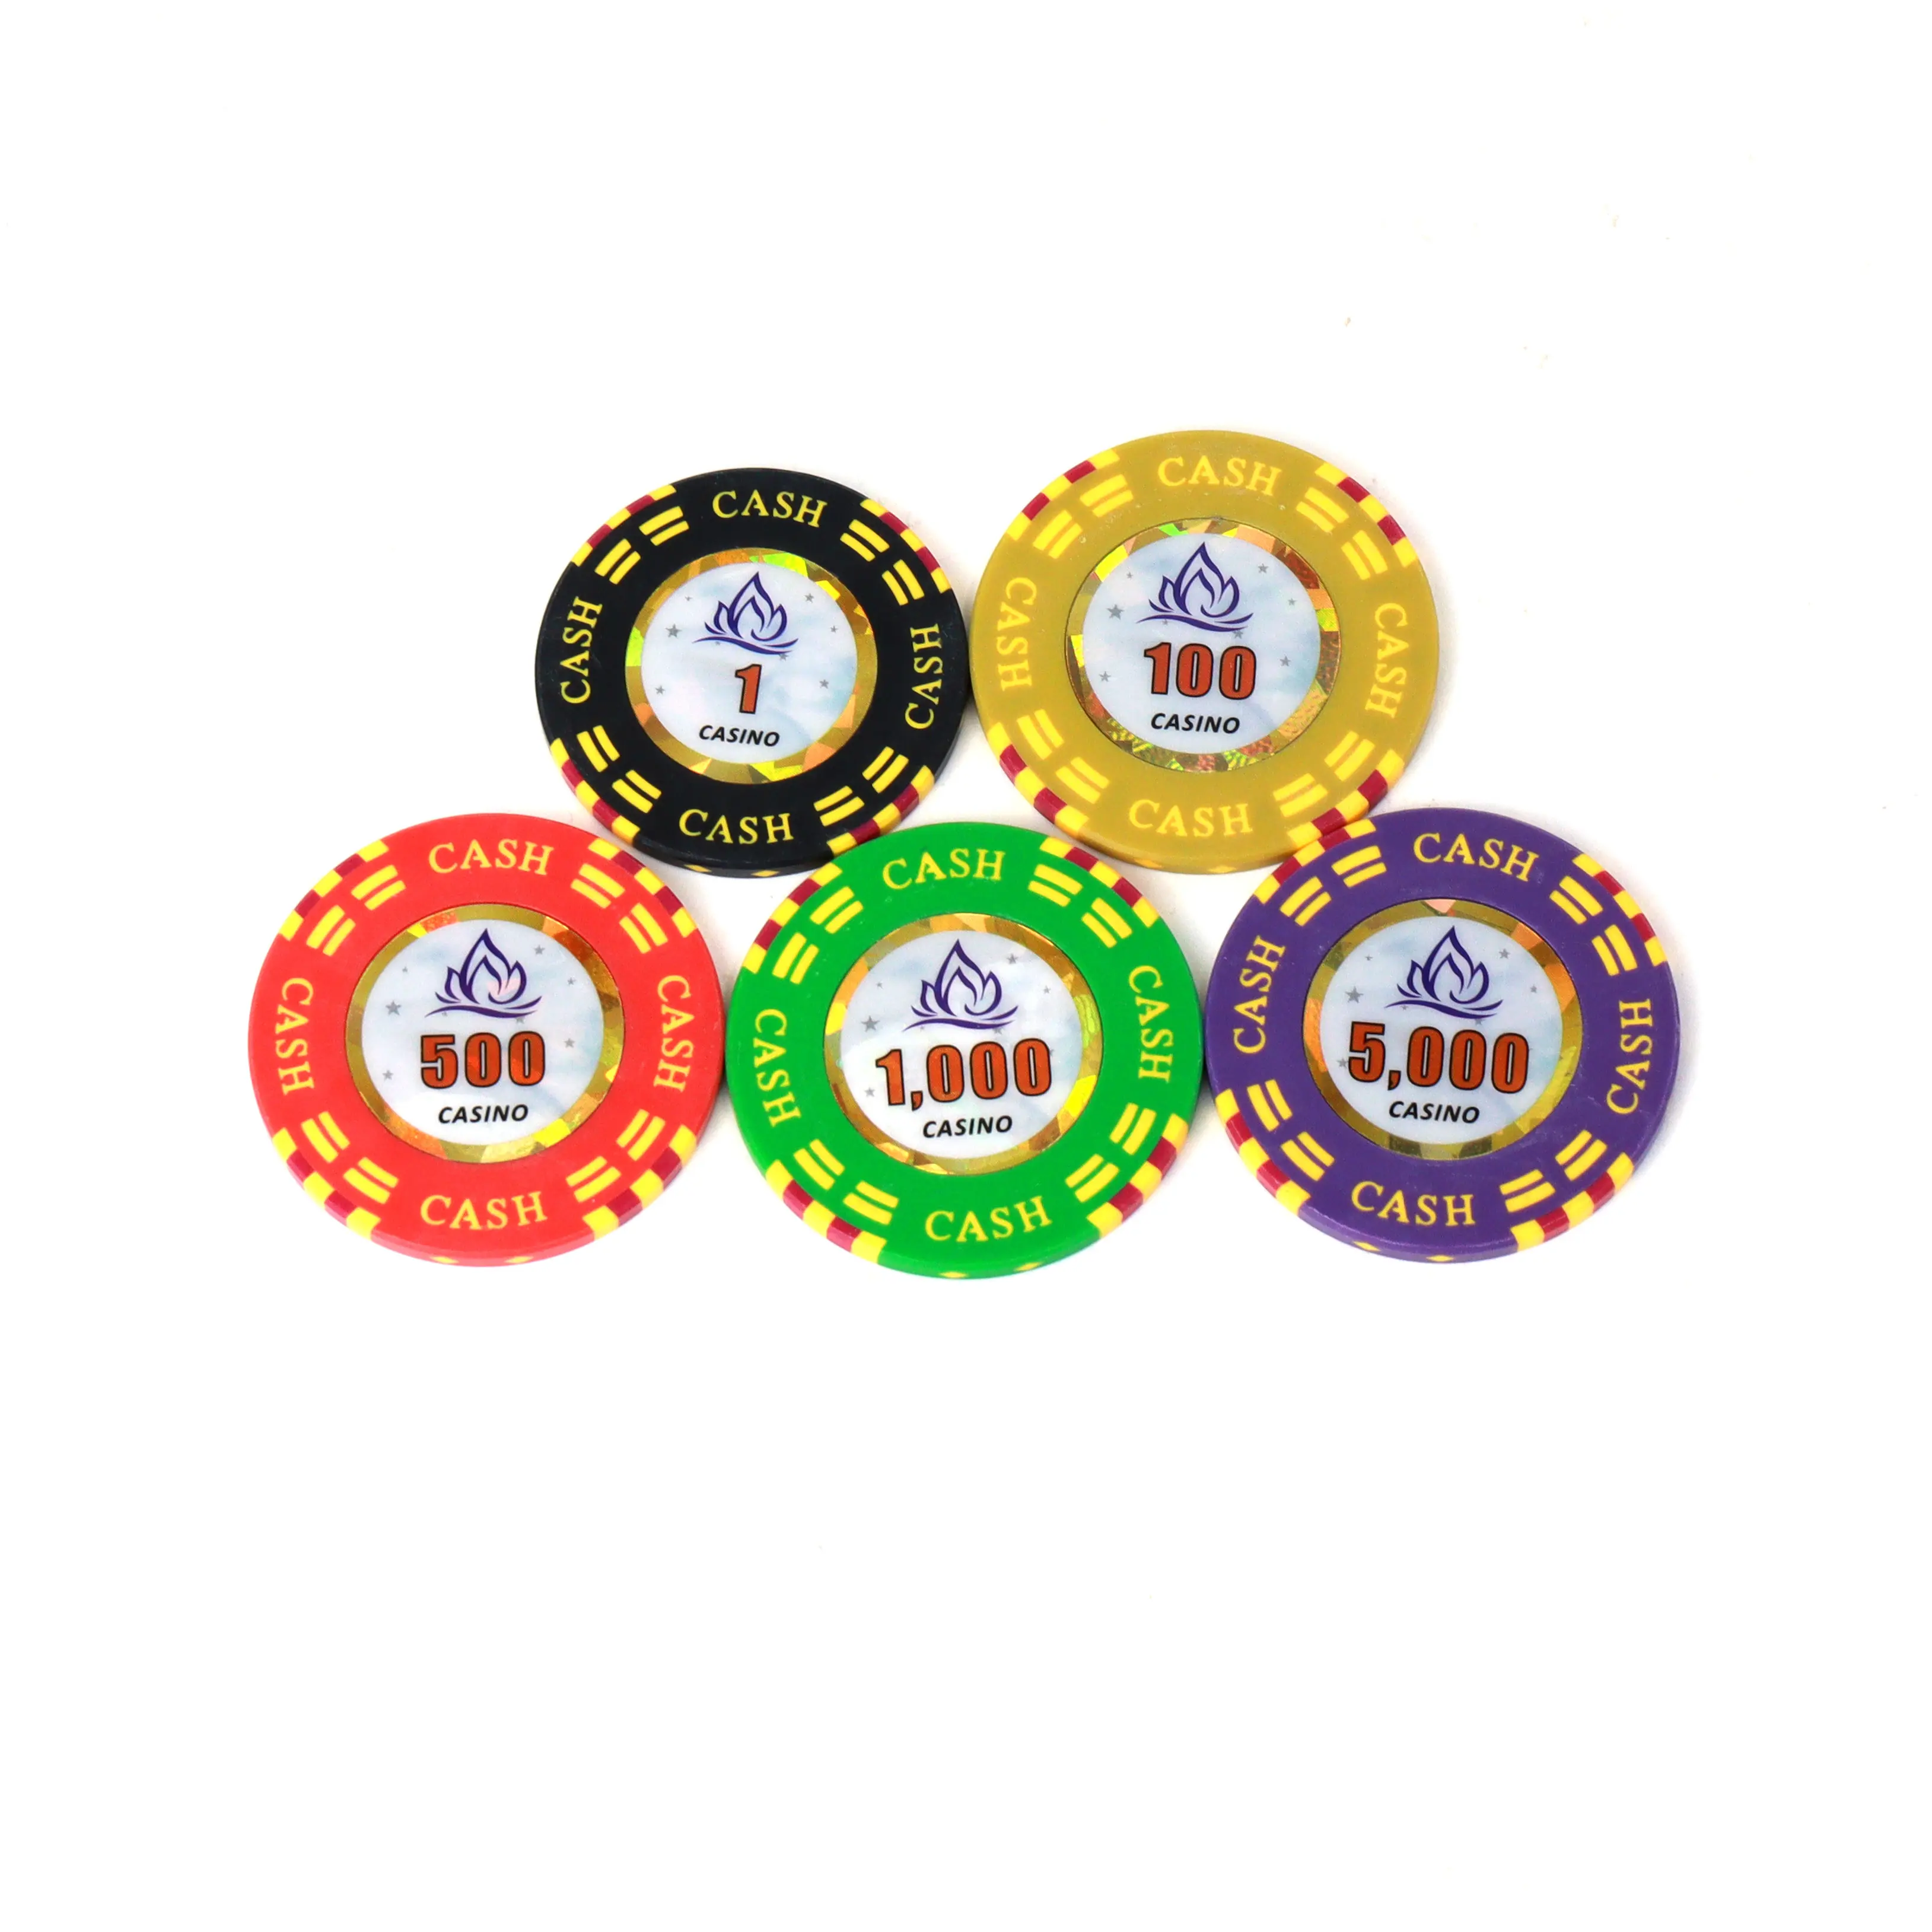 Casino RFID-Poker chips mit hohem Nennwert und Tracking-Technologie Kunden spezifische Composite-Game-Token für den Club